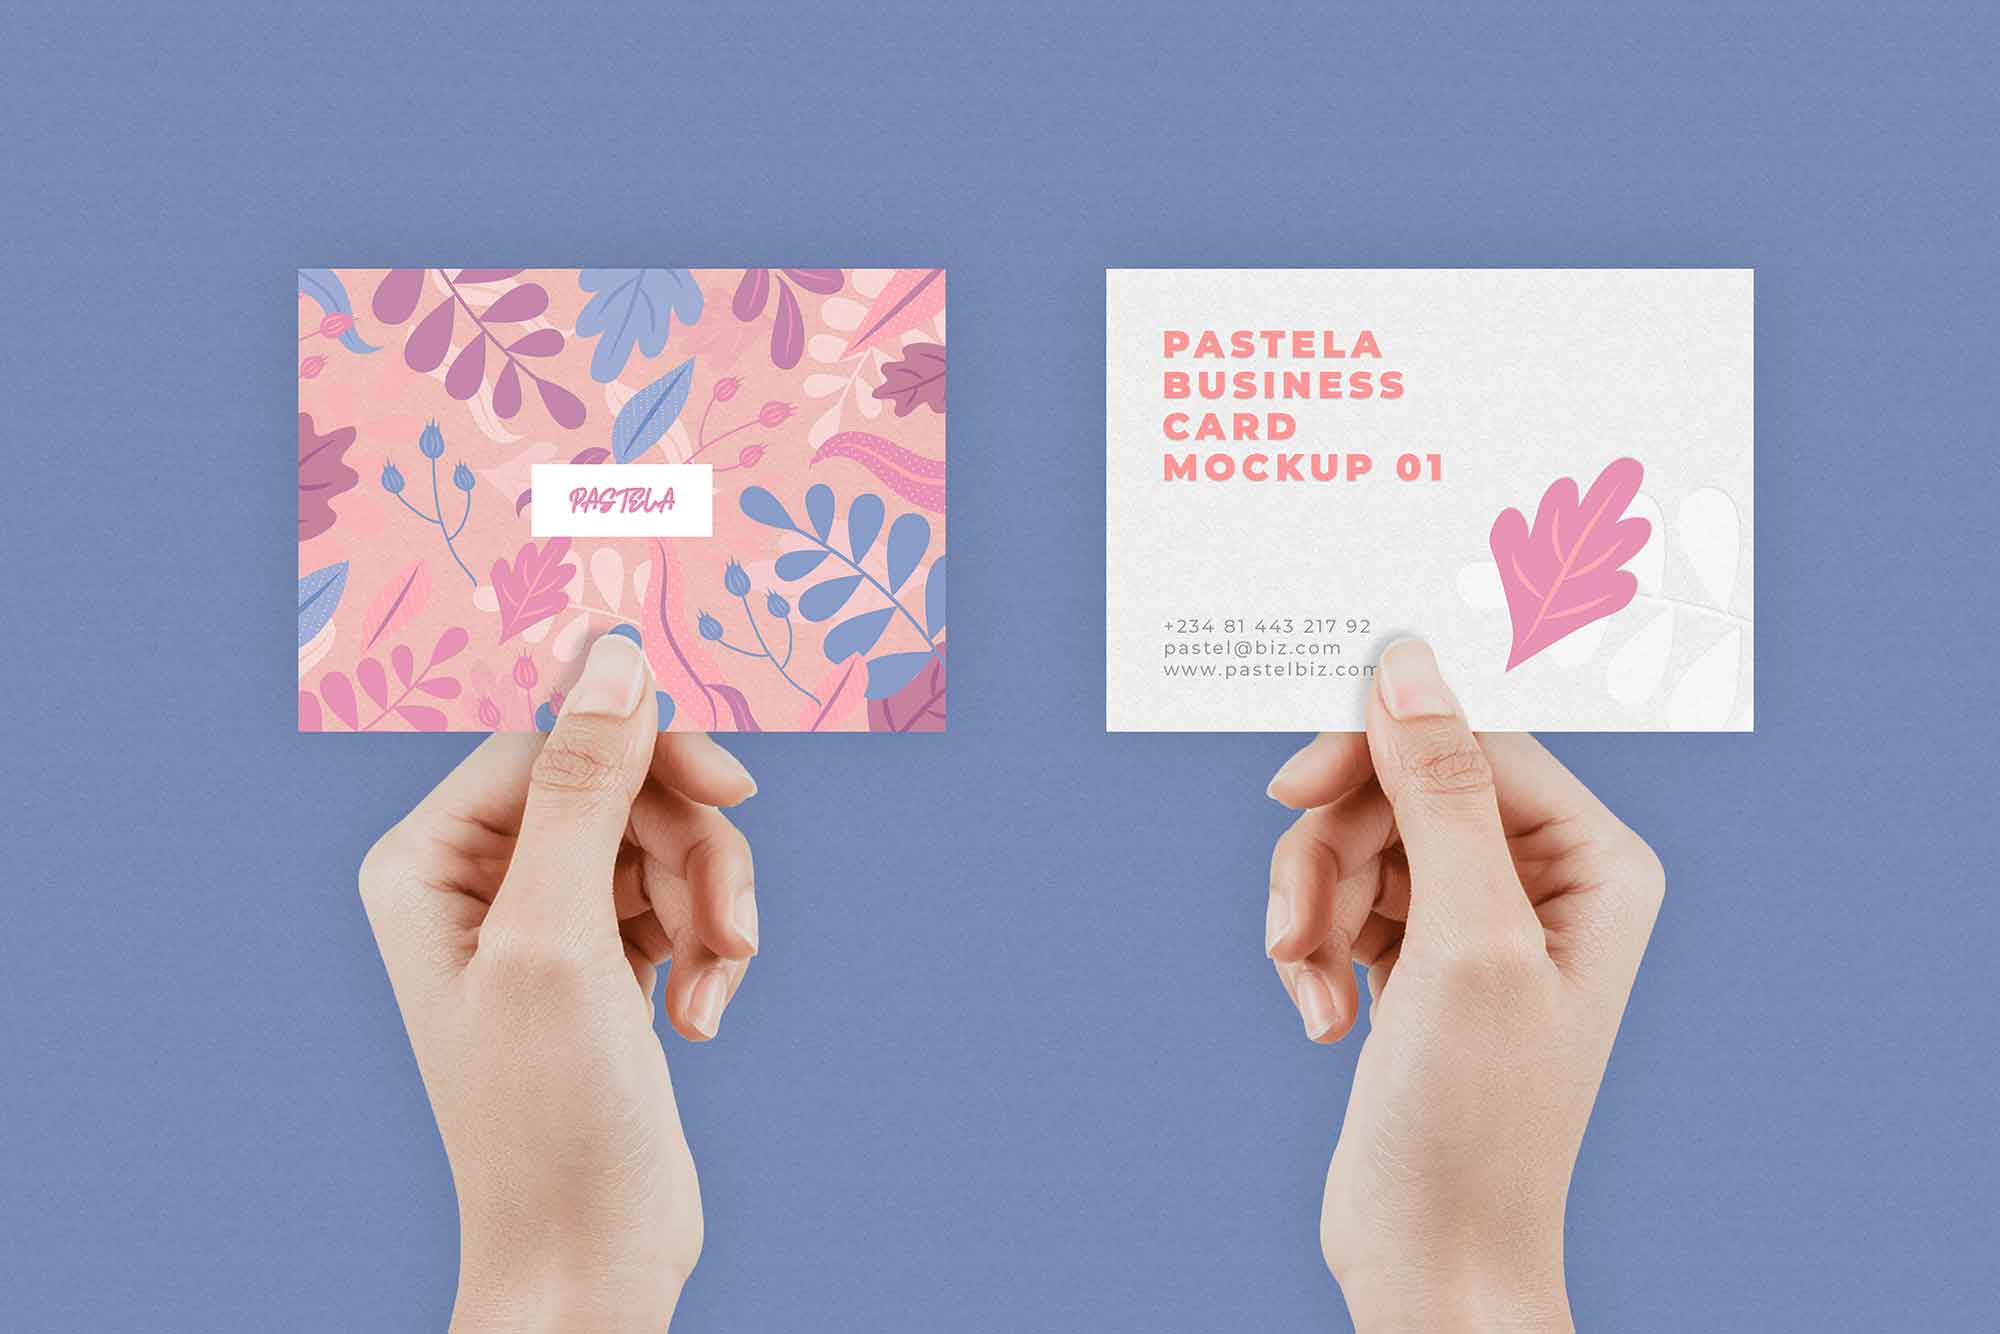 Free business card mockups on violet background